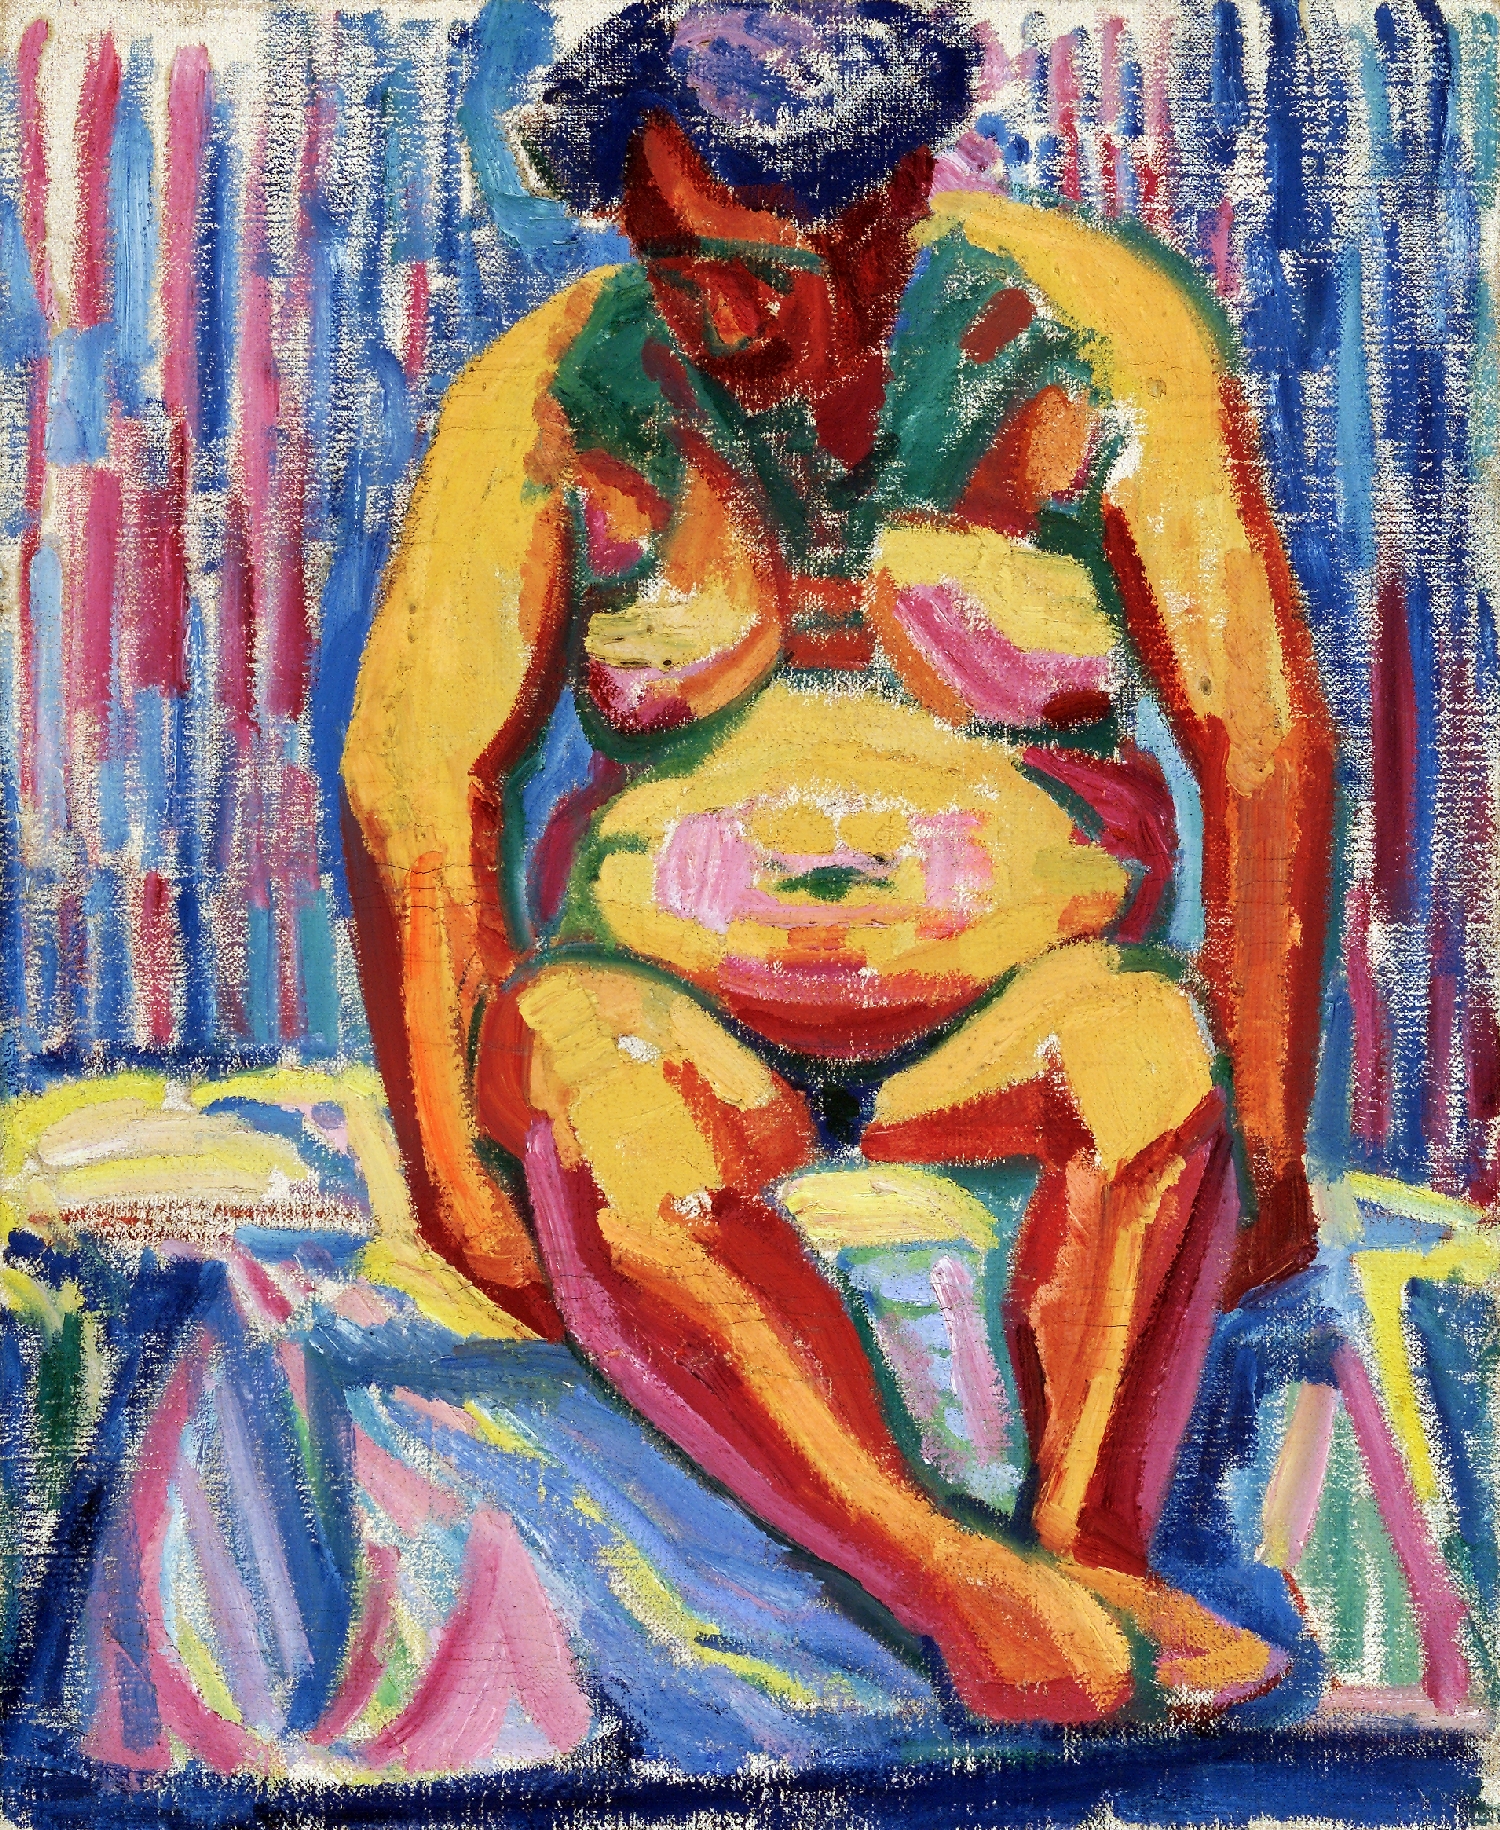 Seated Nude, Helene von Taussig, ca. 1925, inv. no. 1165-88